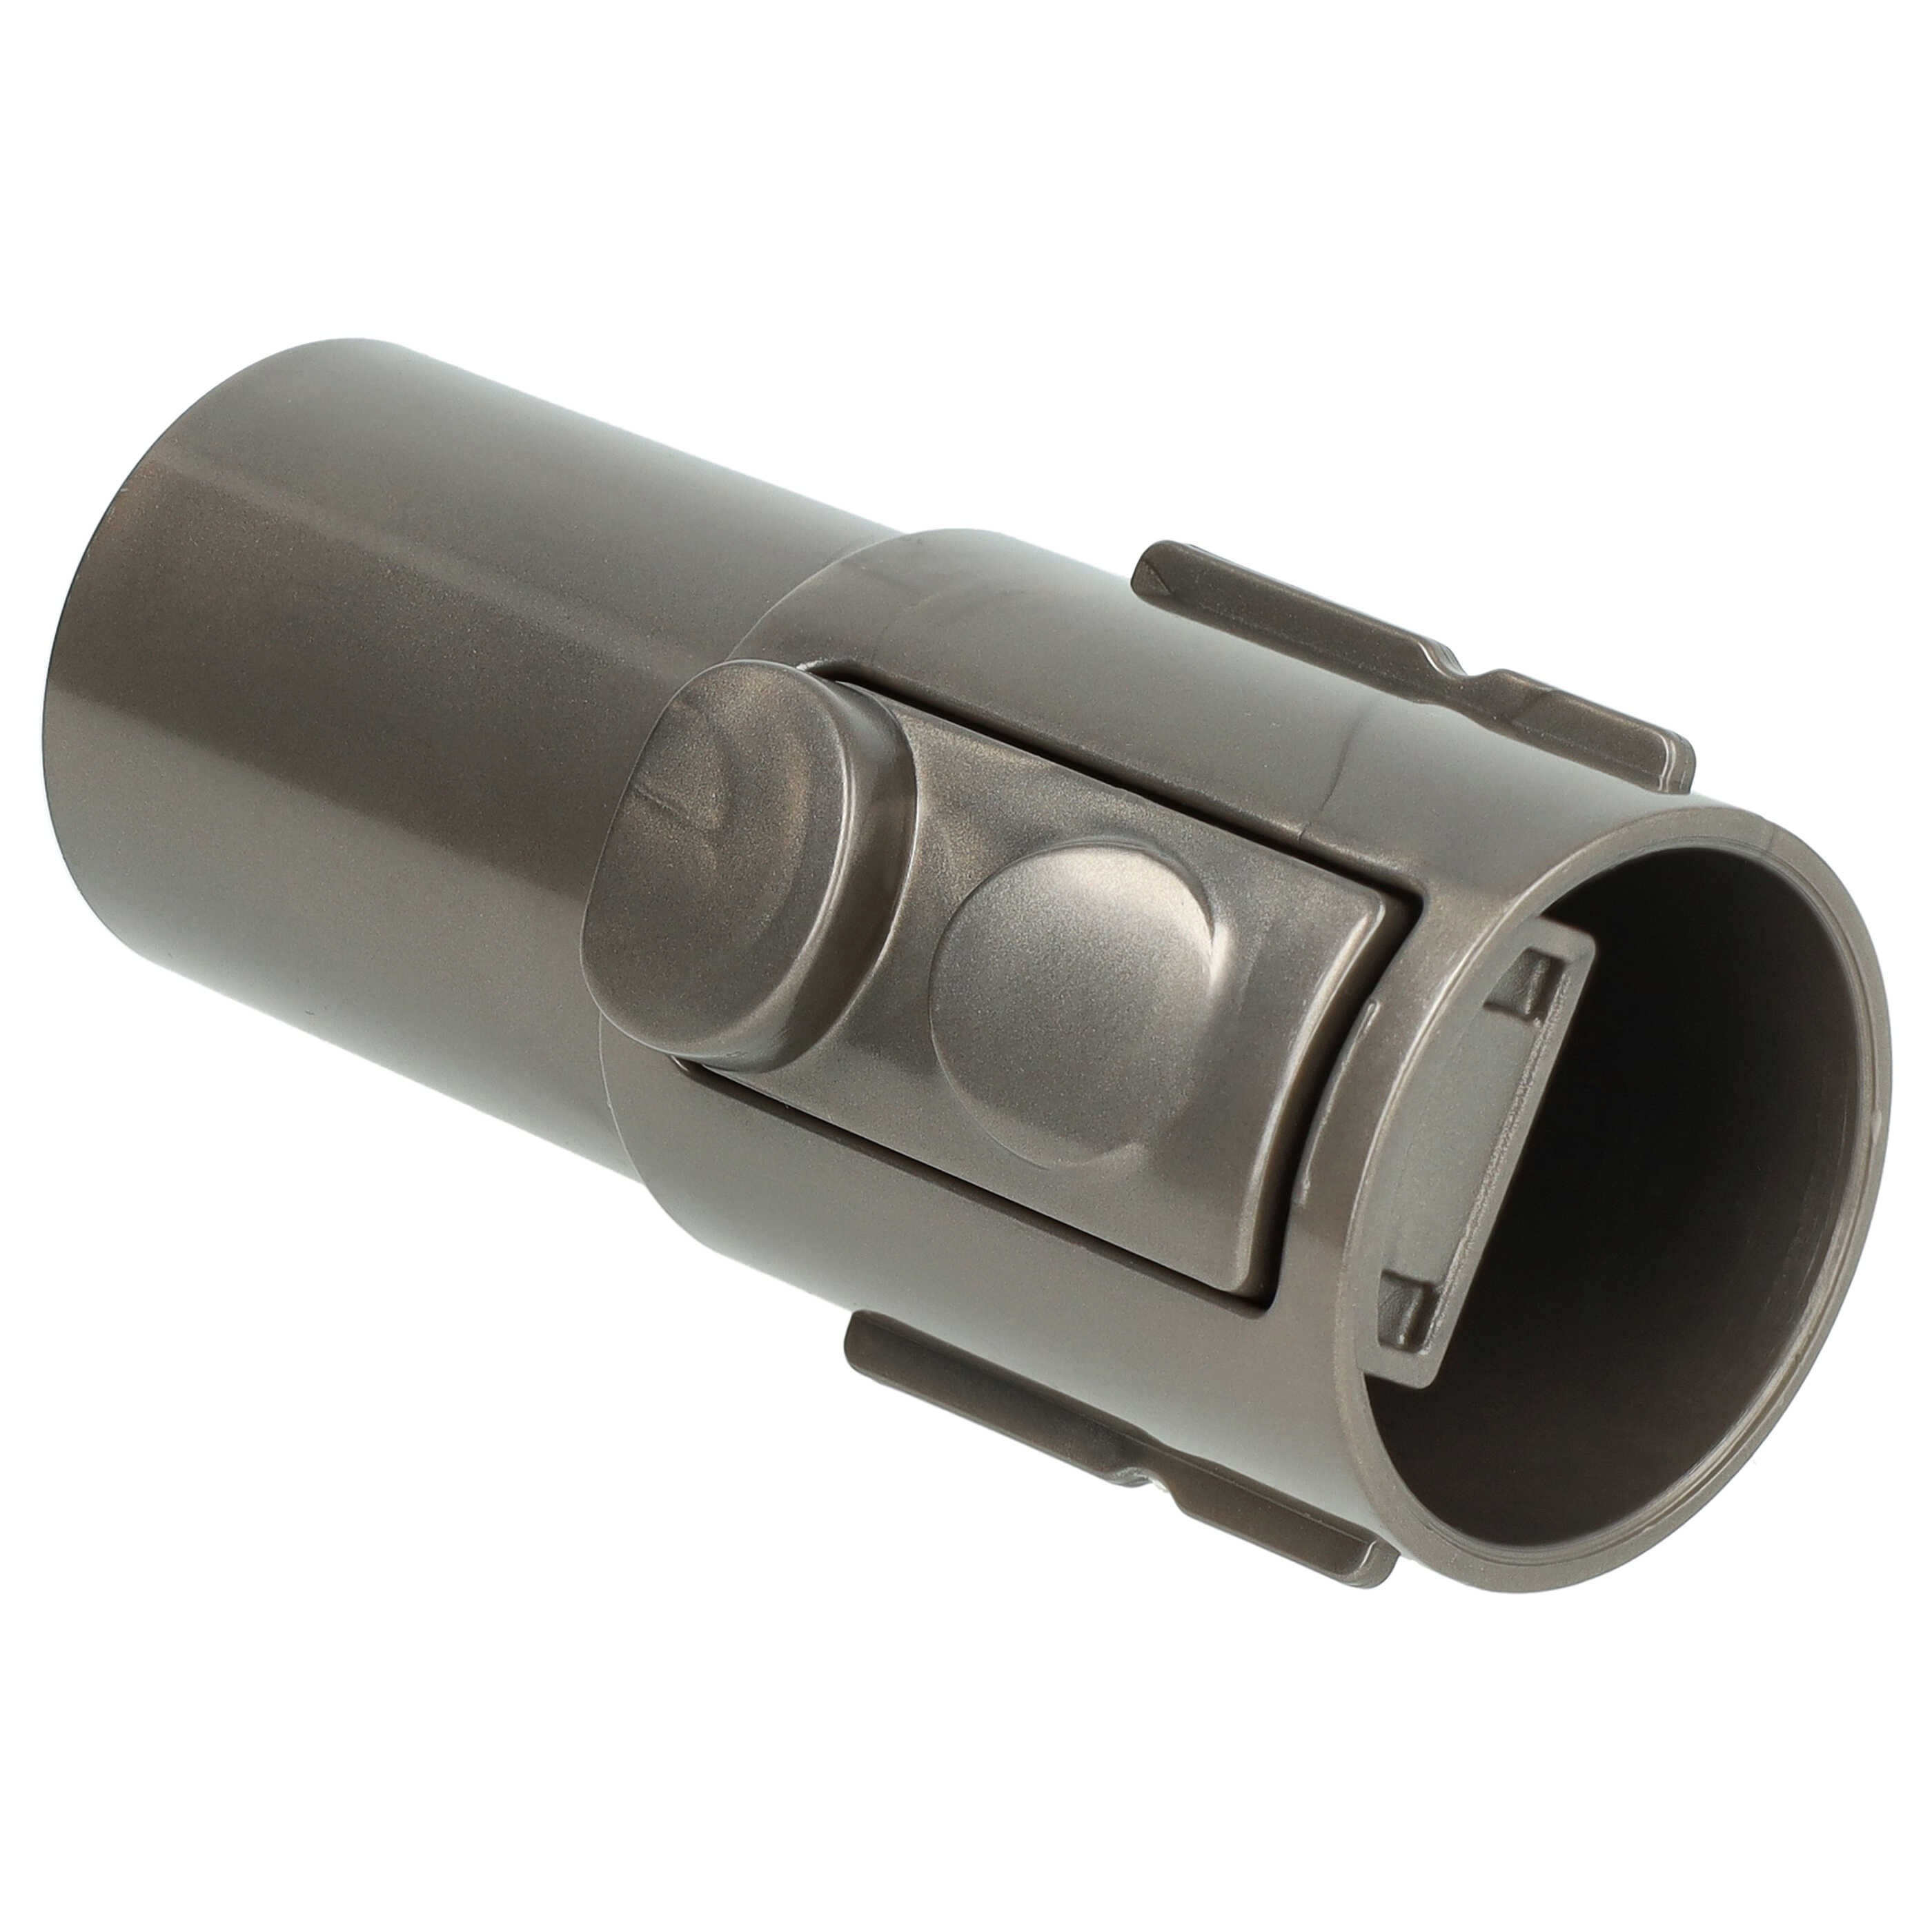 Raccordo con attacco accessori 32mm per aspiratore Dyson SV10 - grigio